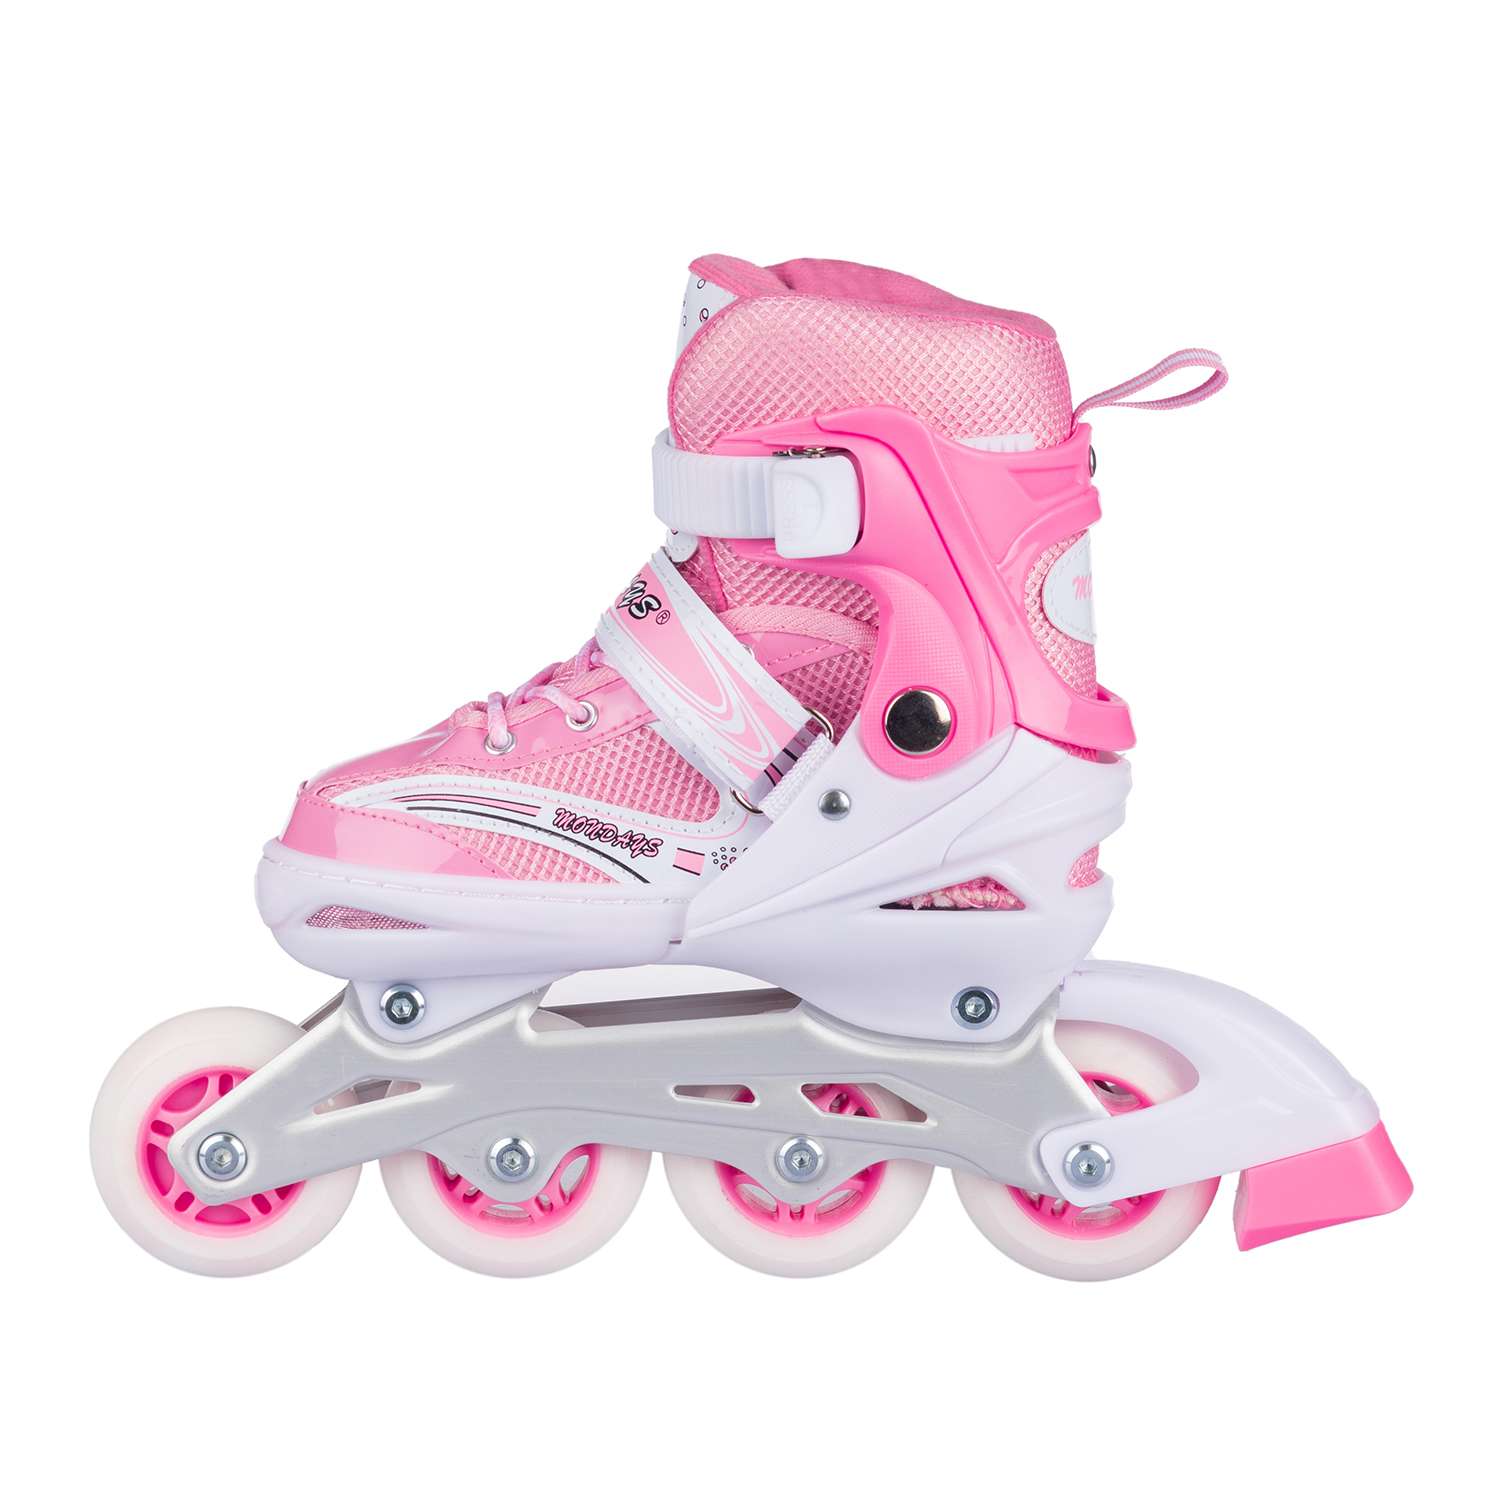 Роликовые коньки BABY STYLE розовые раздвижные размер с 28 по 31S светящиеся колеса - фото 6